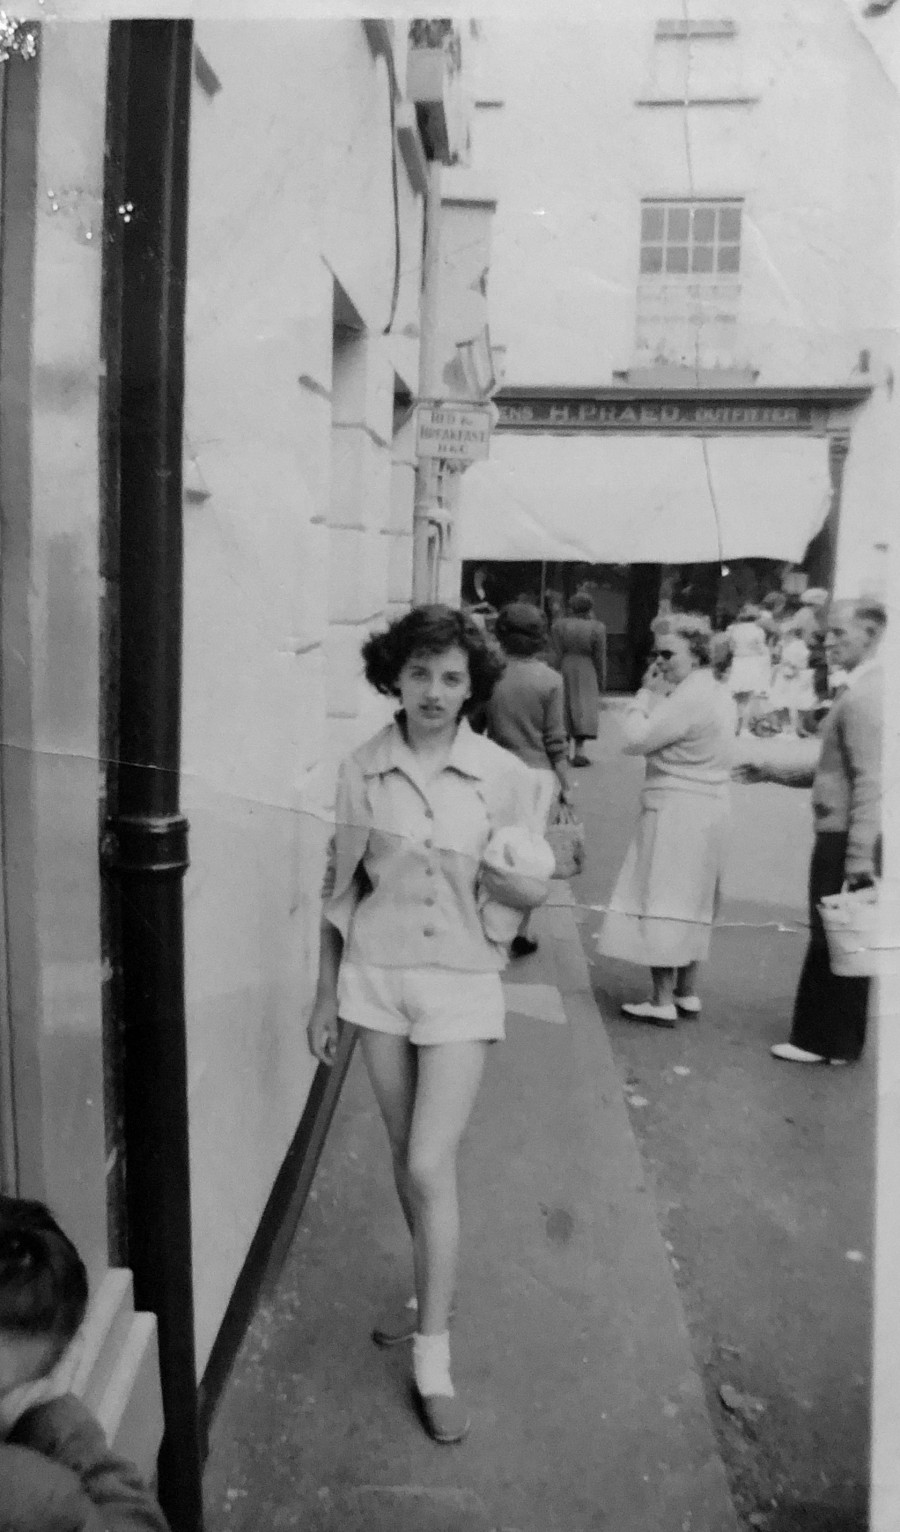 St Ives, 1956